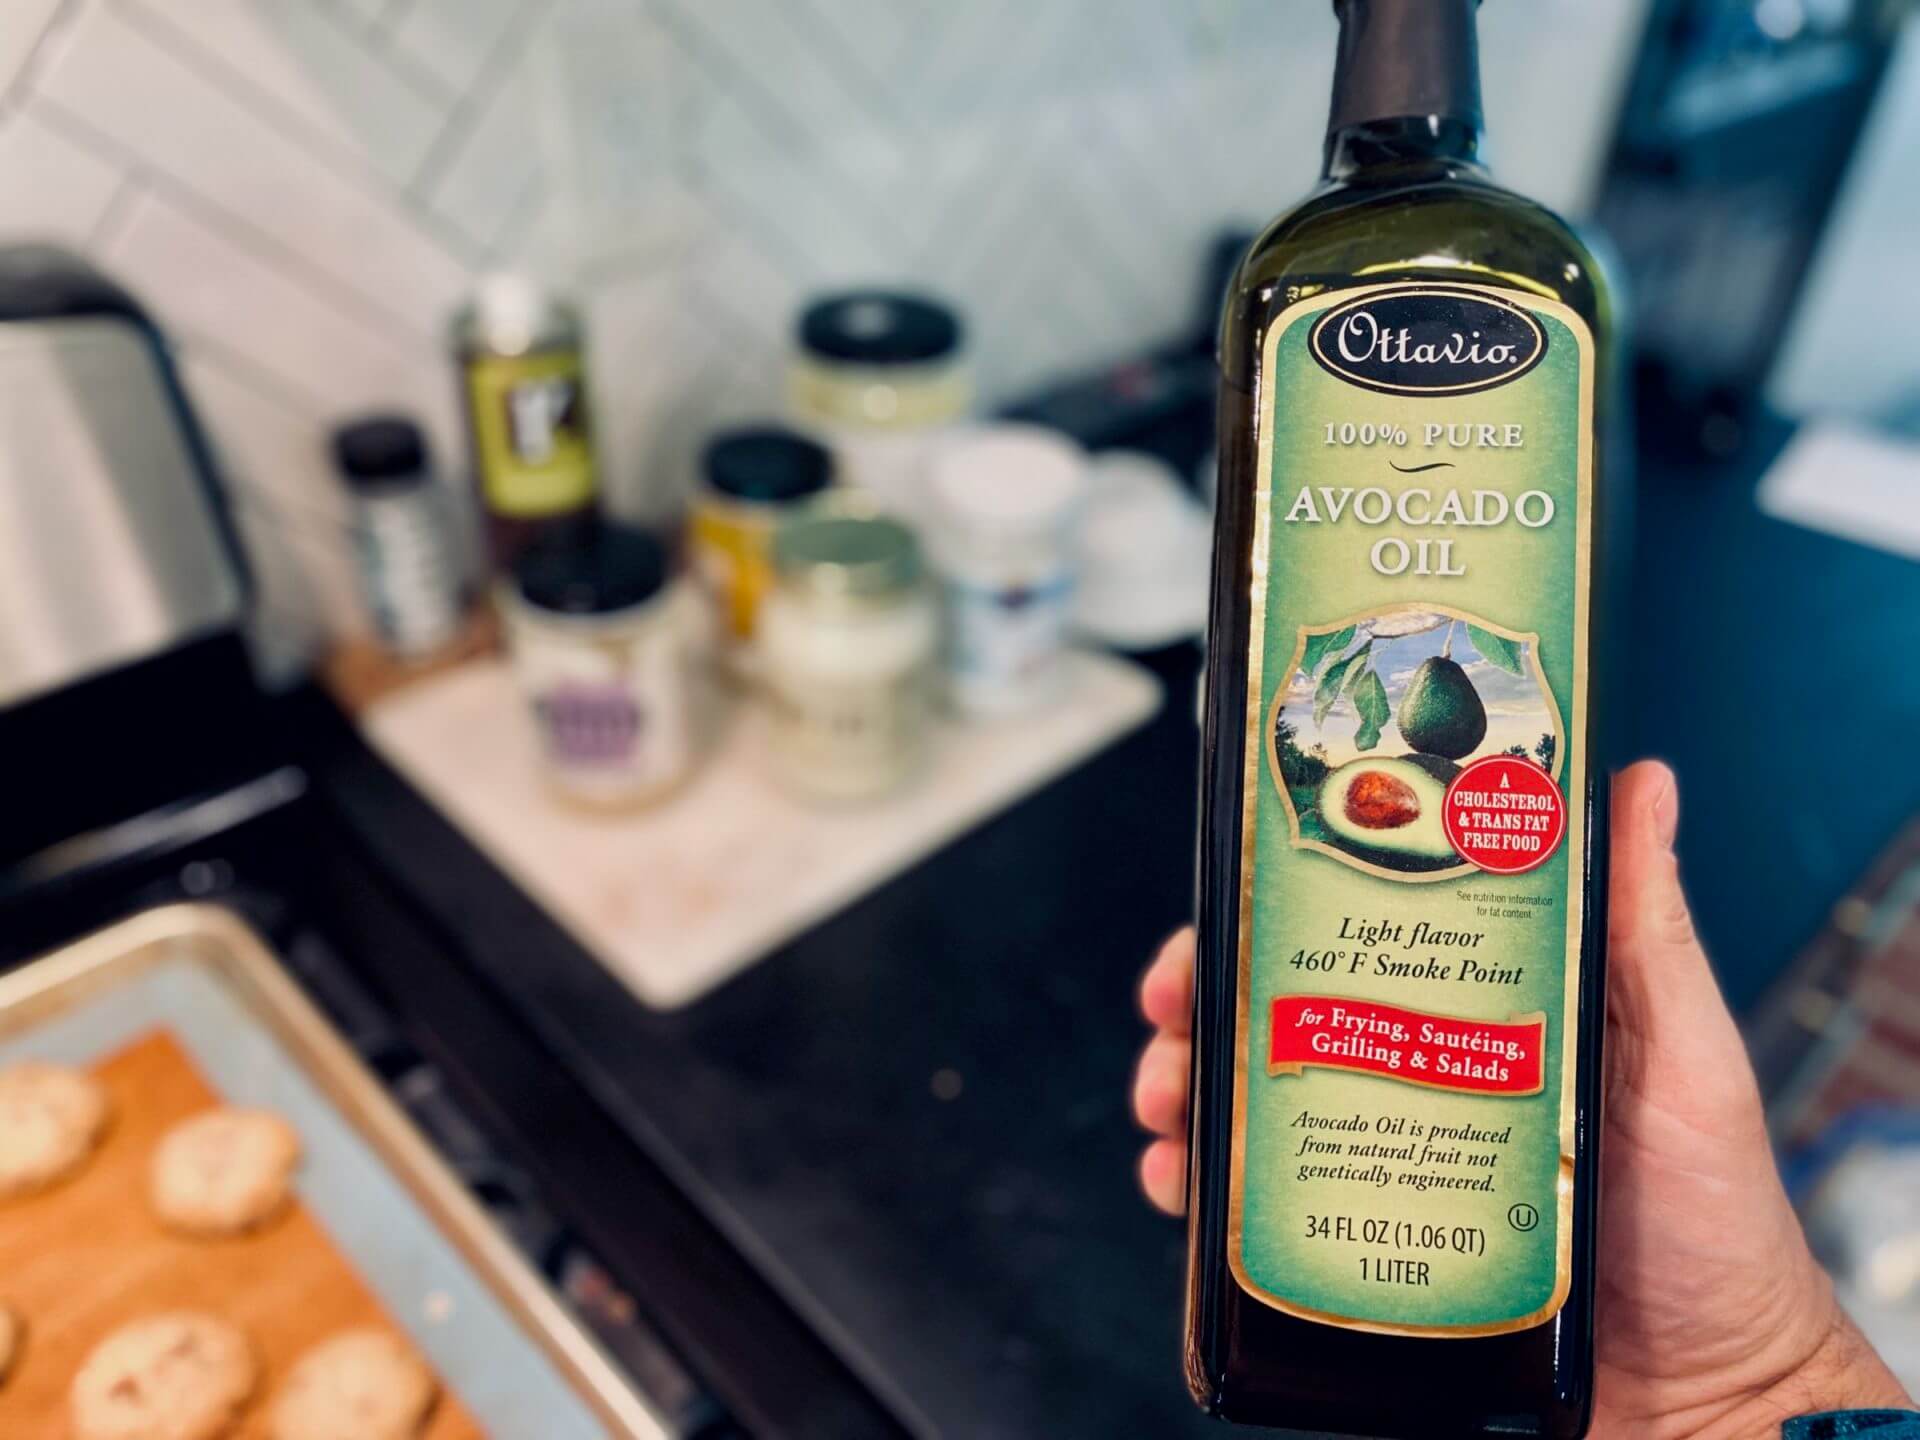 Avocado Oil from Costco